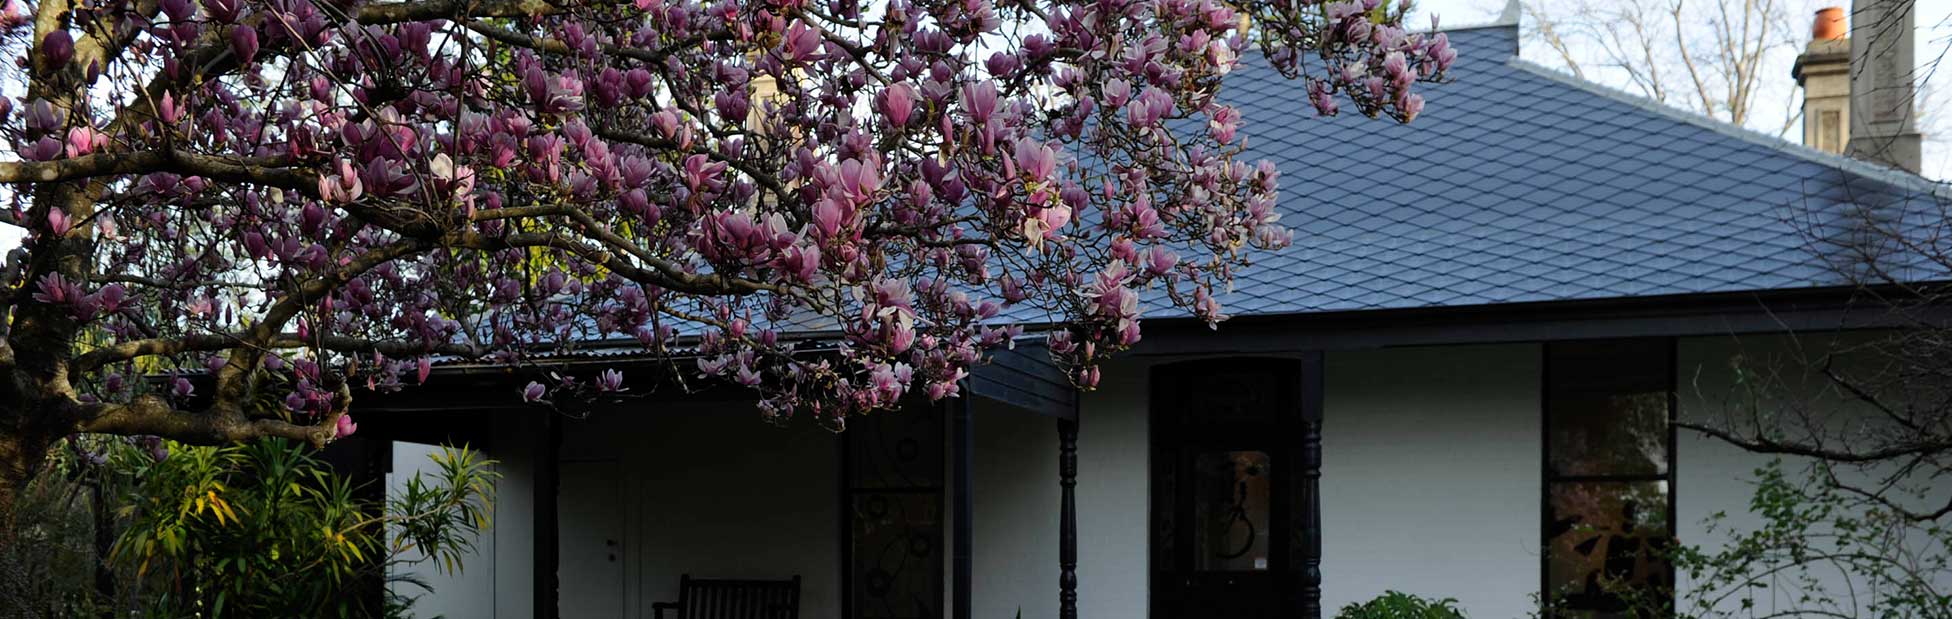 Flowering tree outside of Penrith Regional Gallery